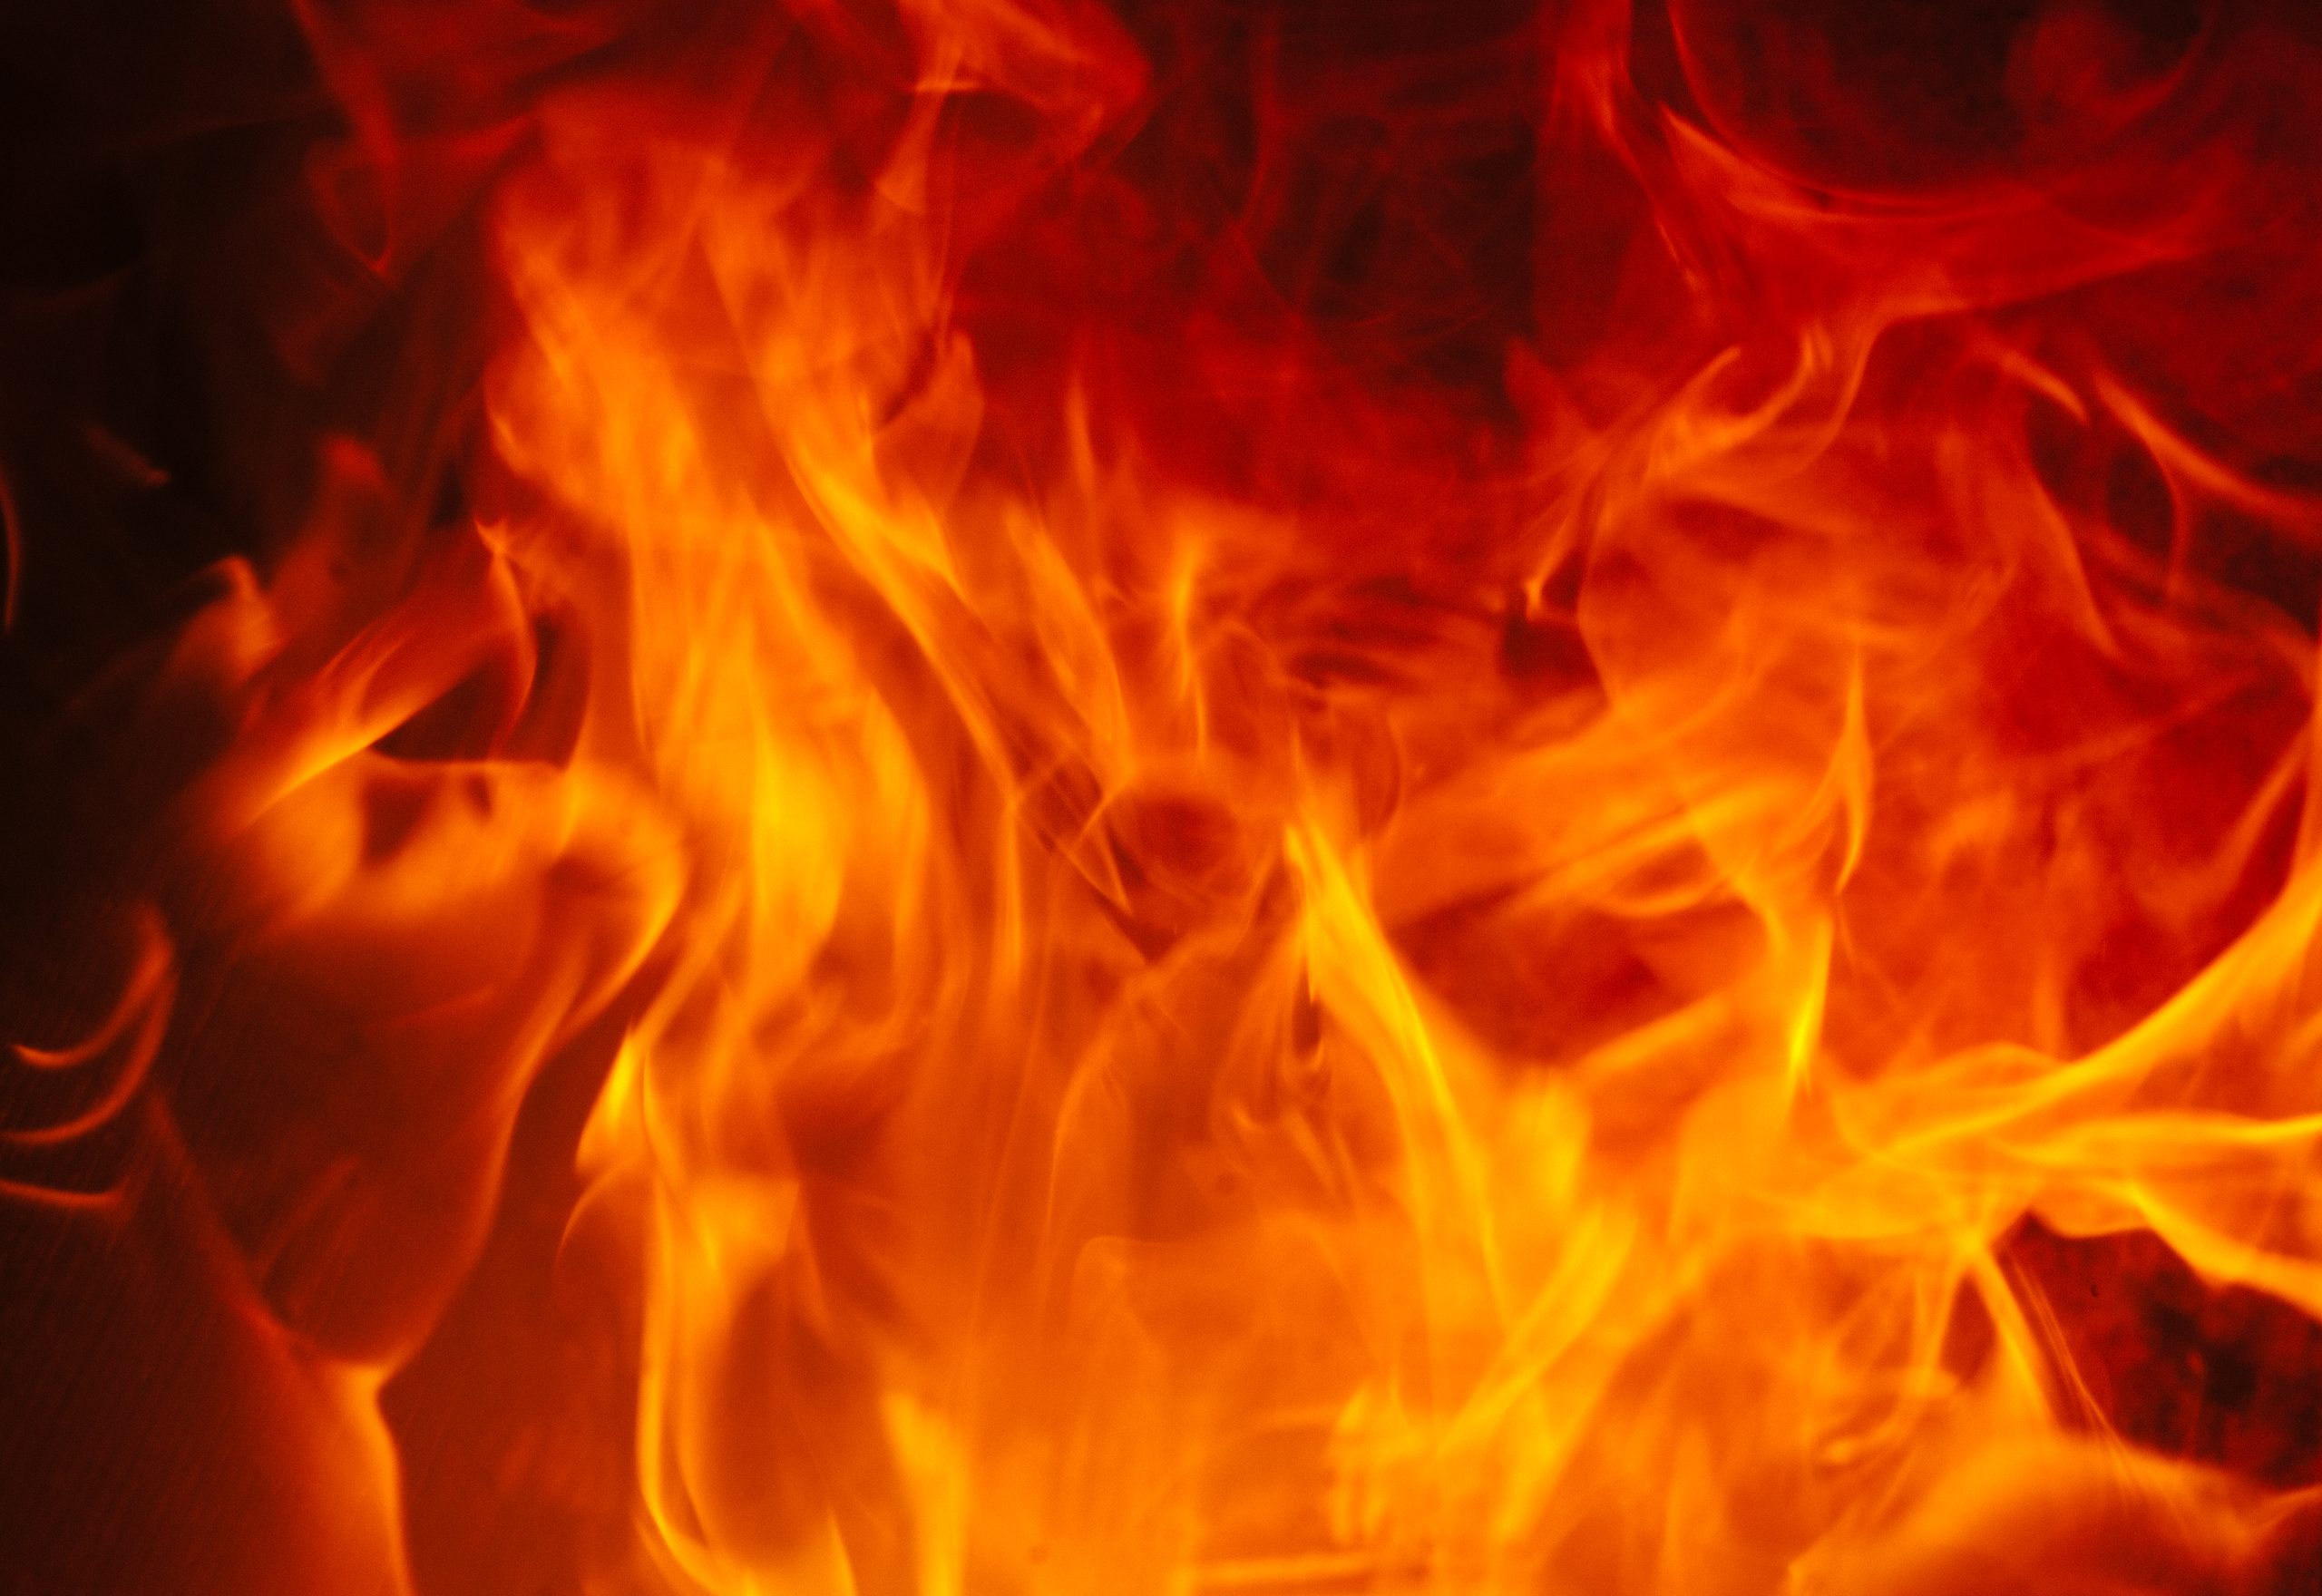 fire_orange_emergency_burning-scaled